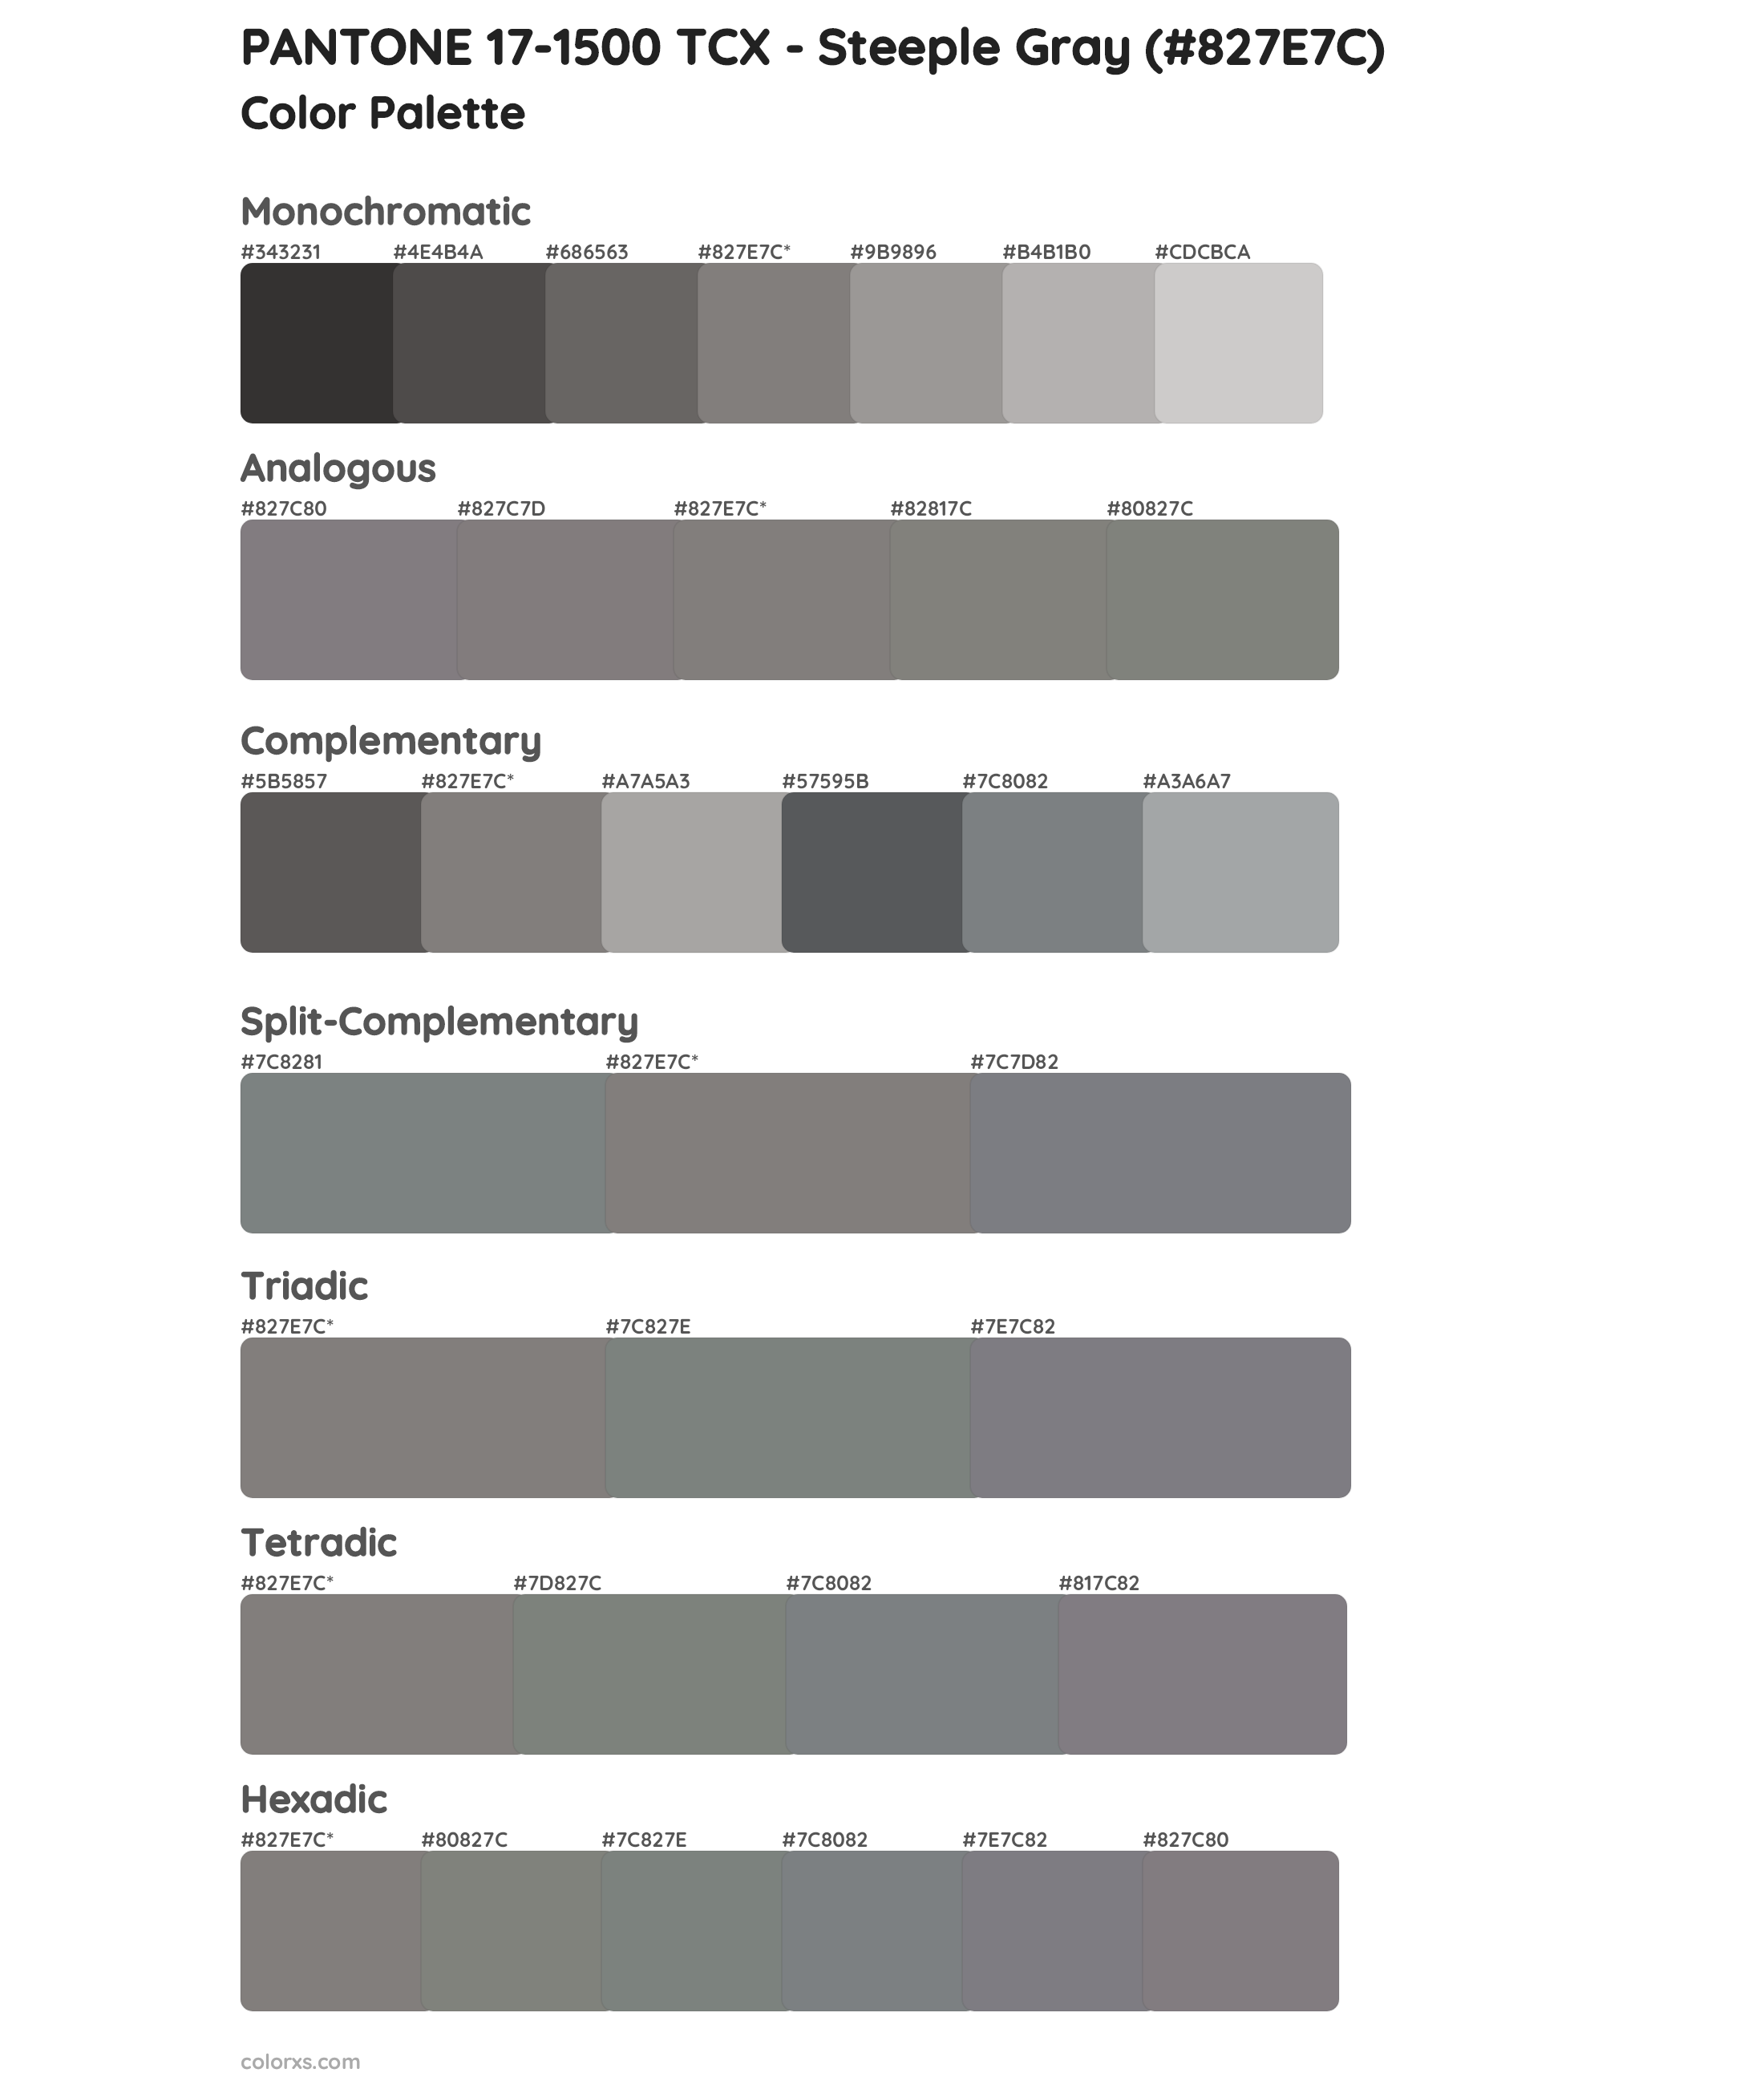 PANTONE 17-1500 TCX - Steeple Gray Color Scheme Palettes